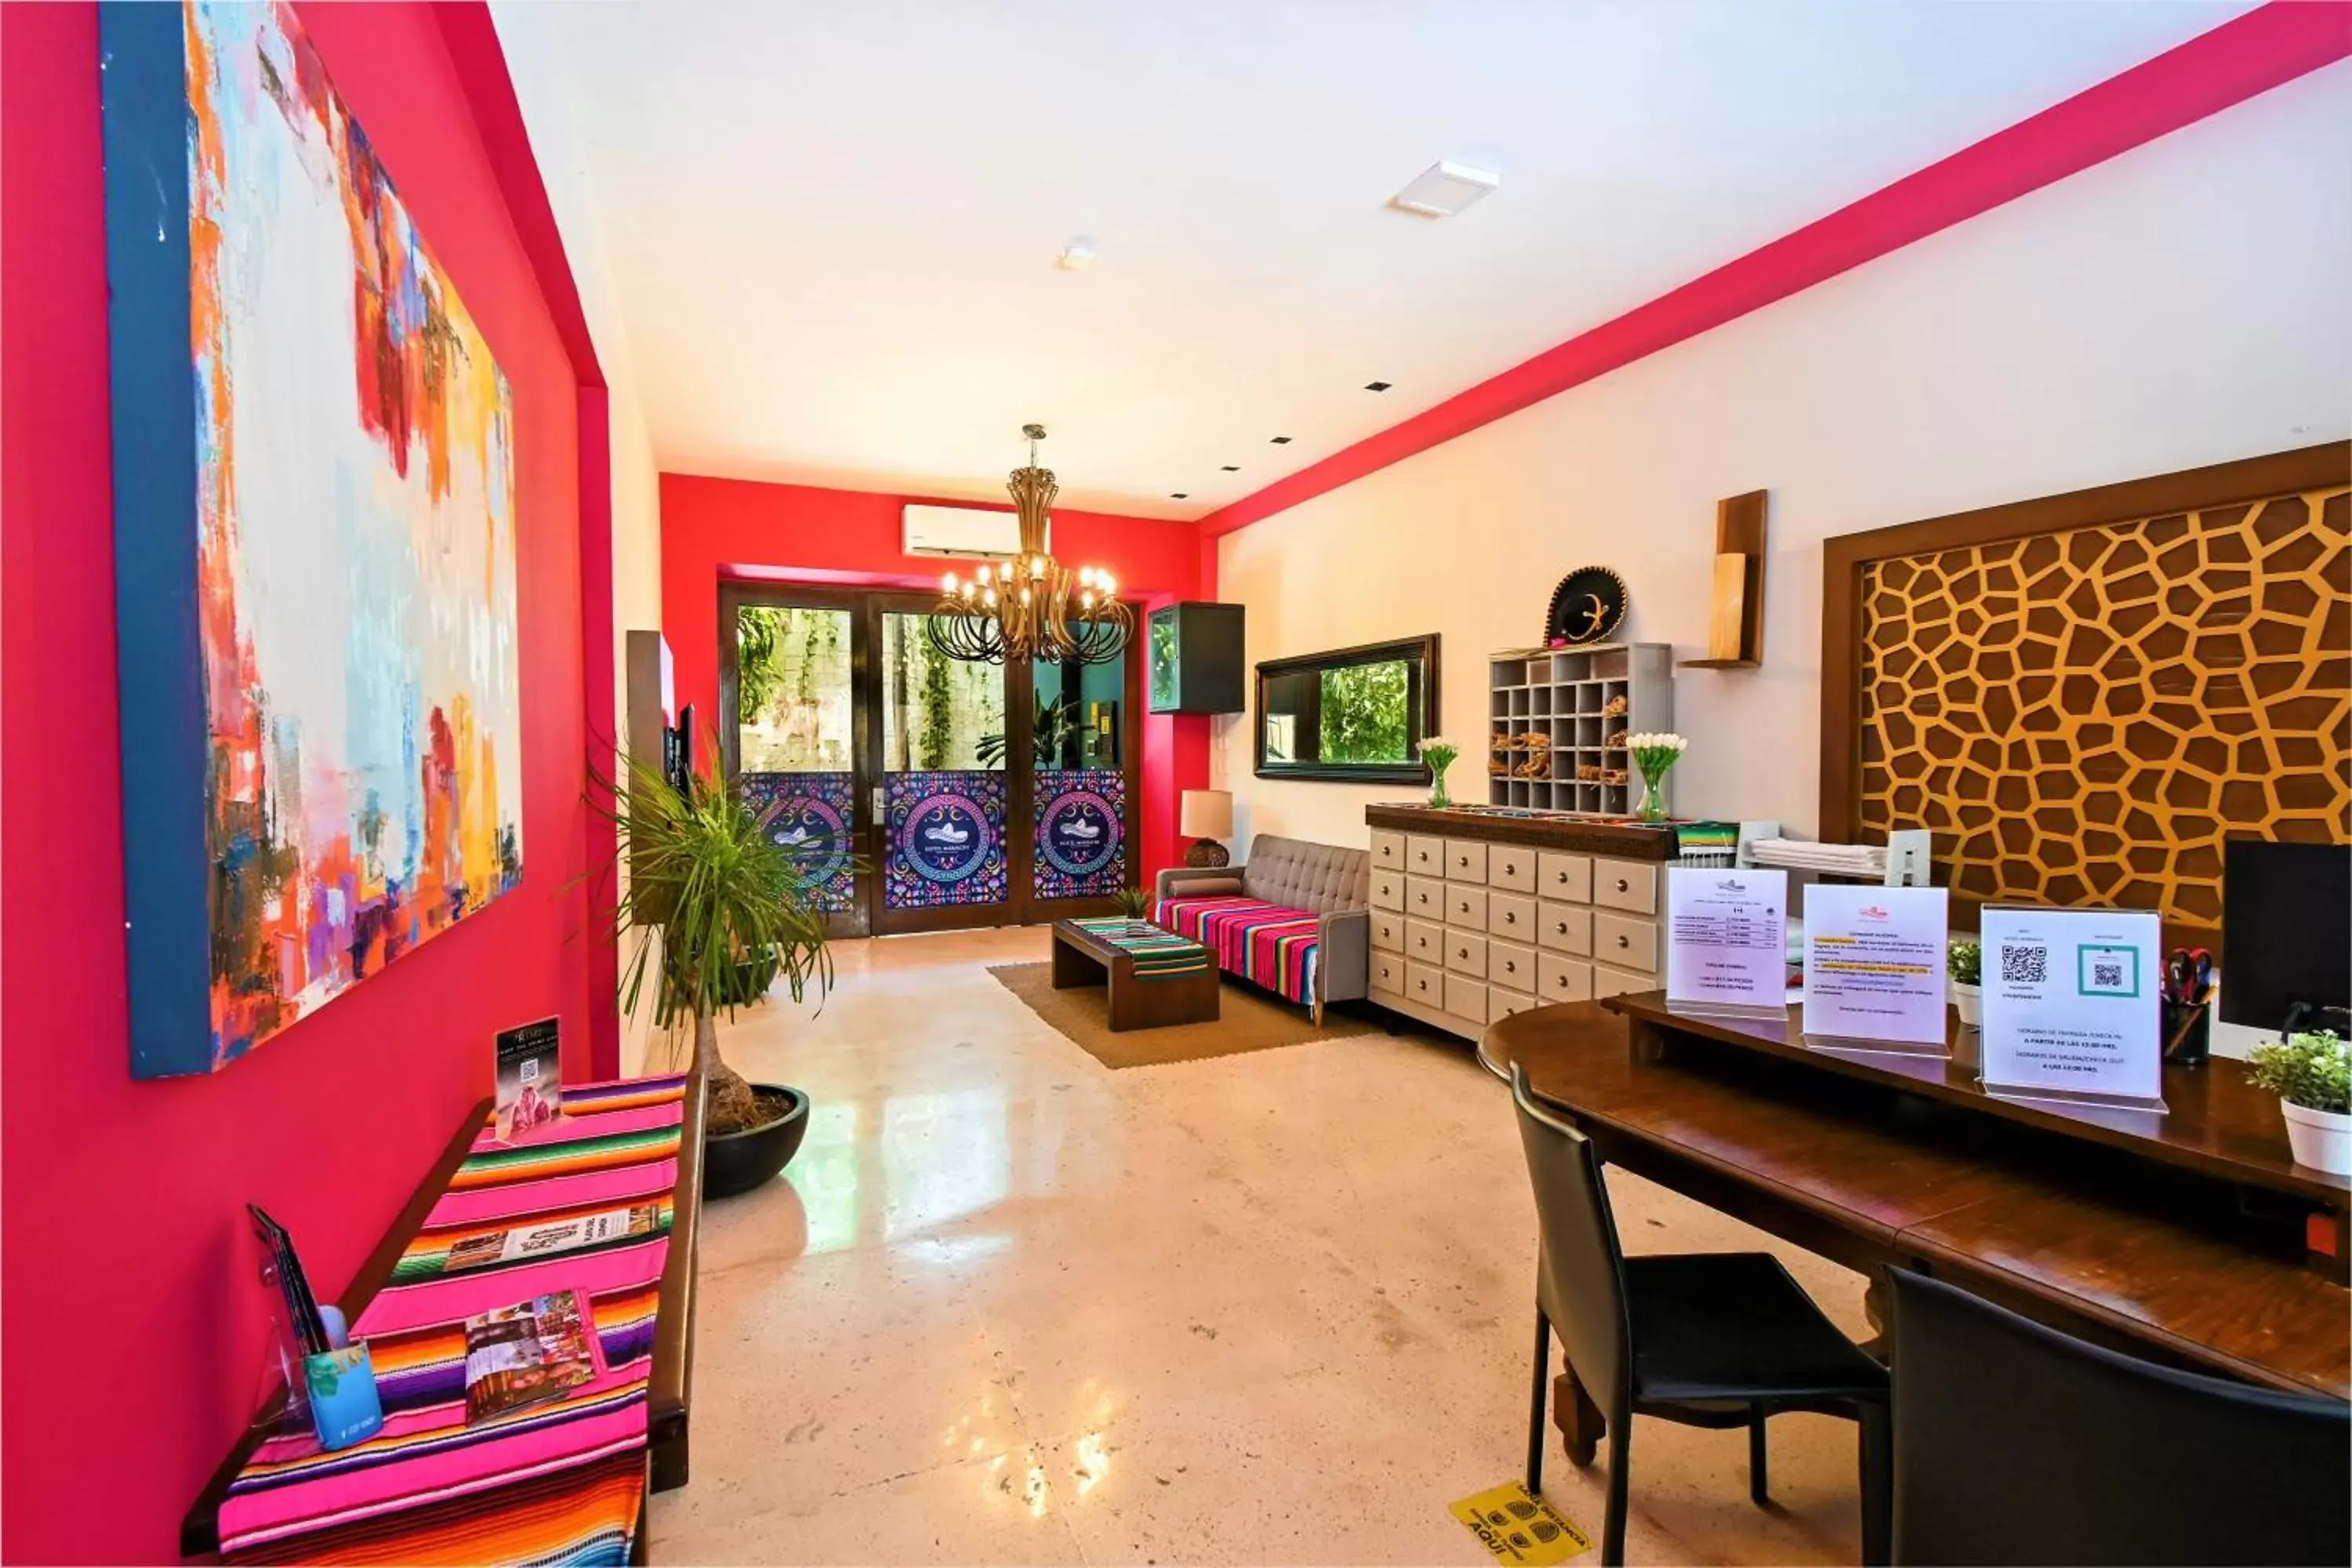 Lobby or reception, Lobby/Reception in Hotel Mariachi by Kavia 5th Av